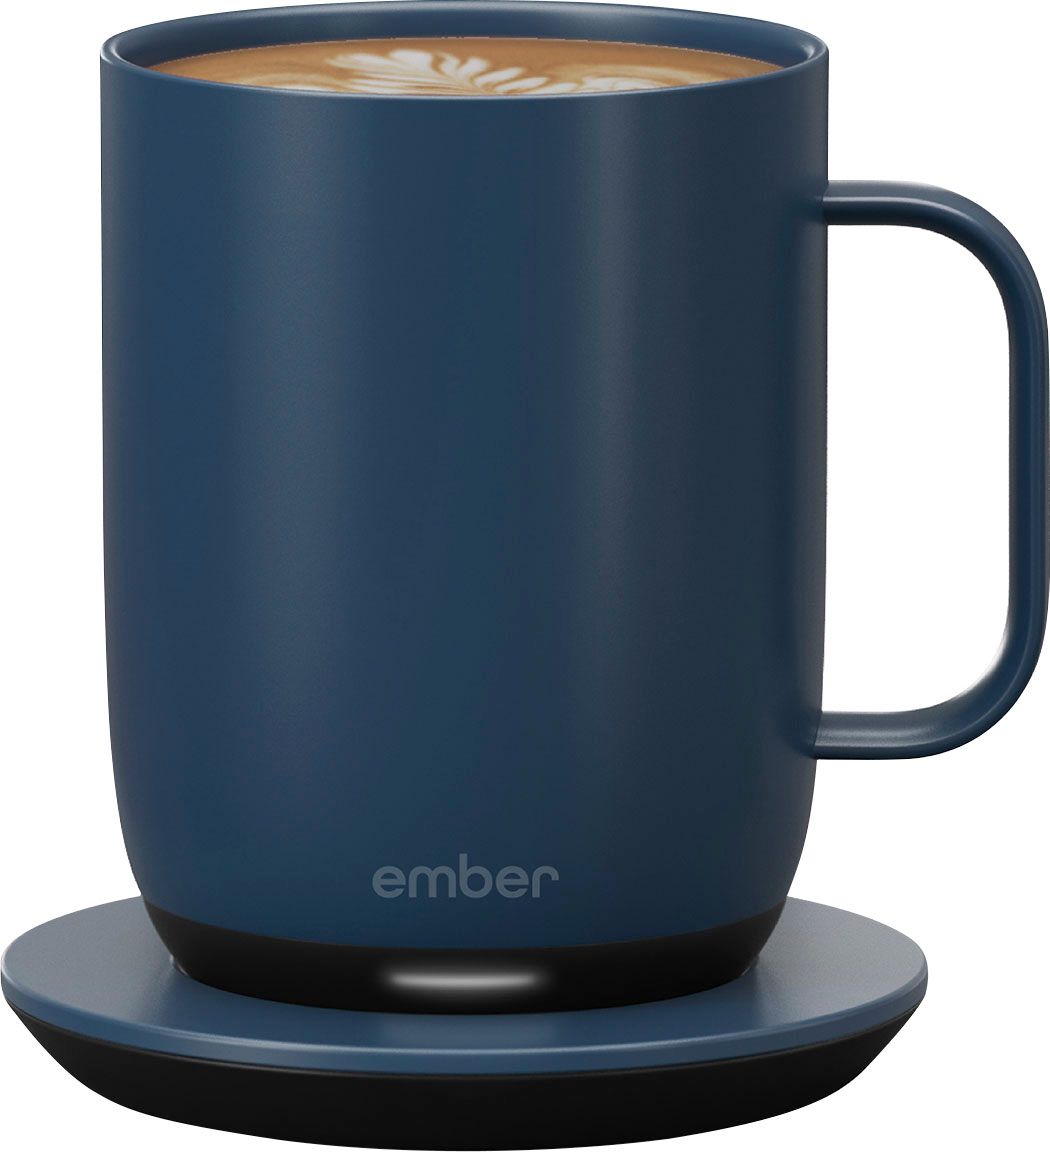 Ember-Smart-Mug-2-PB